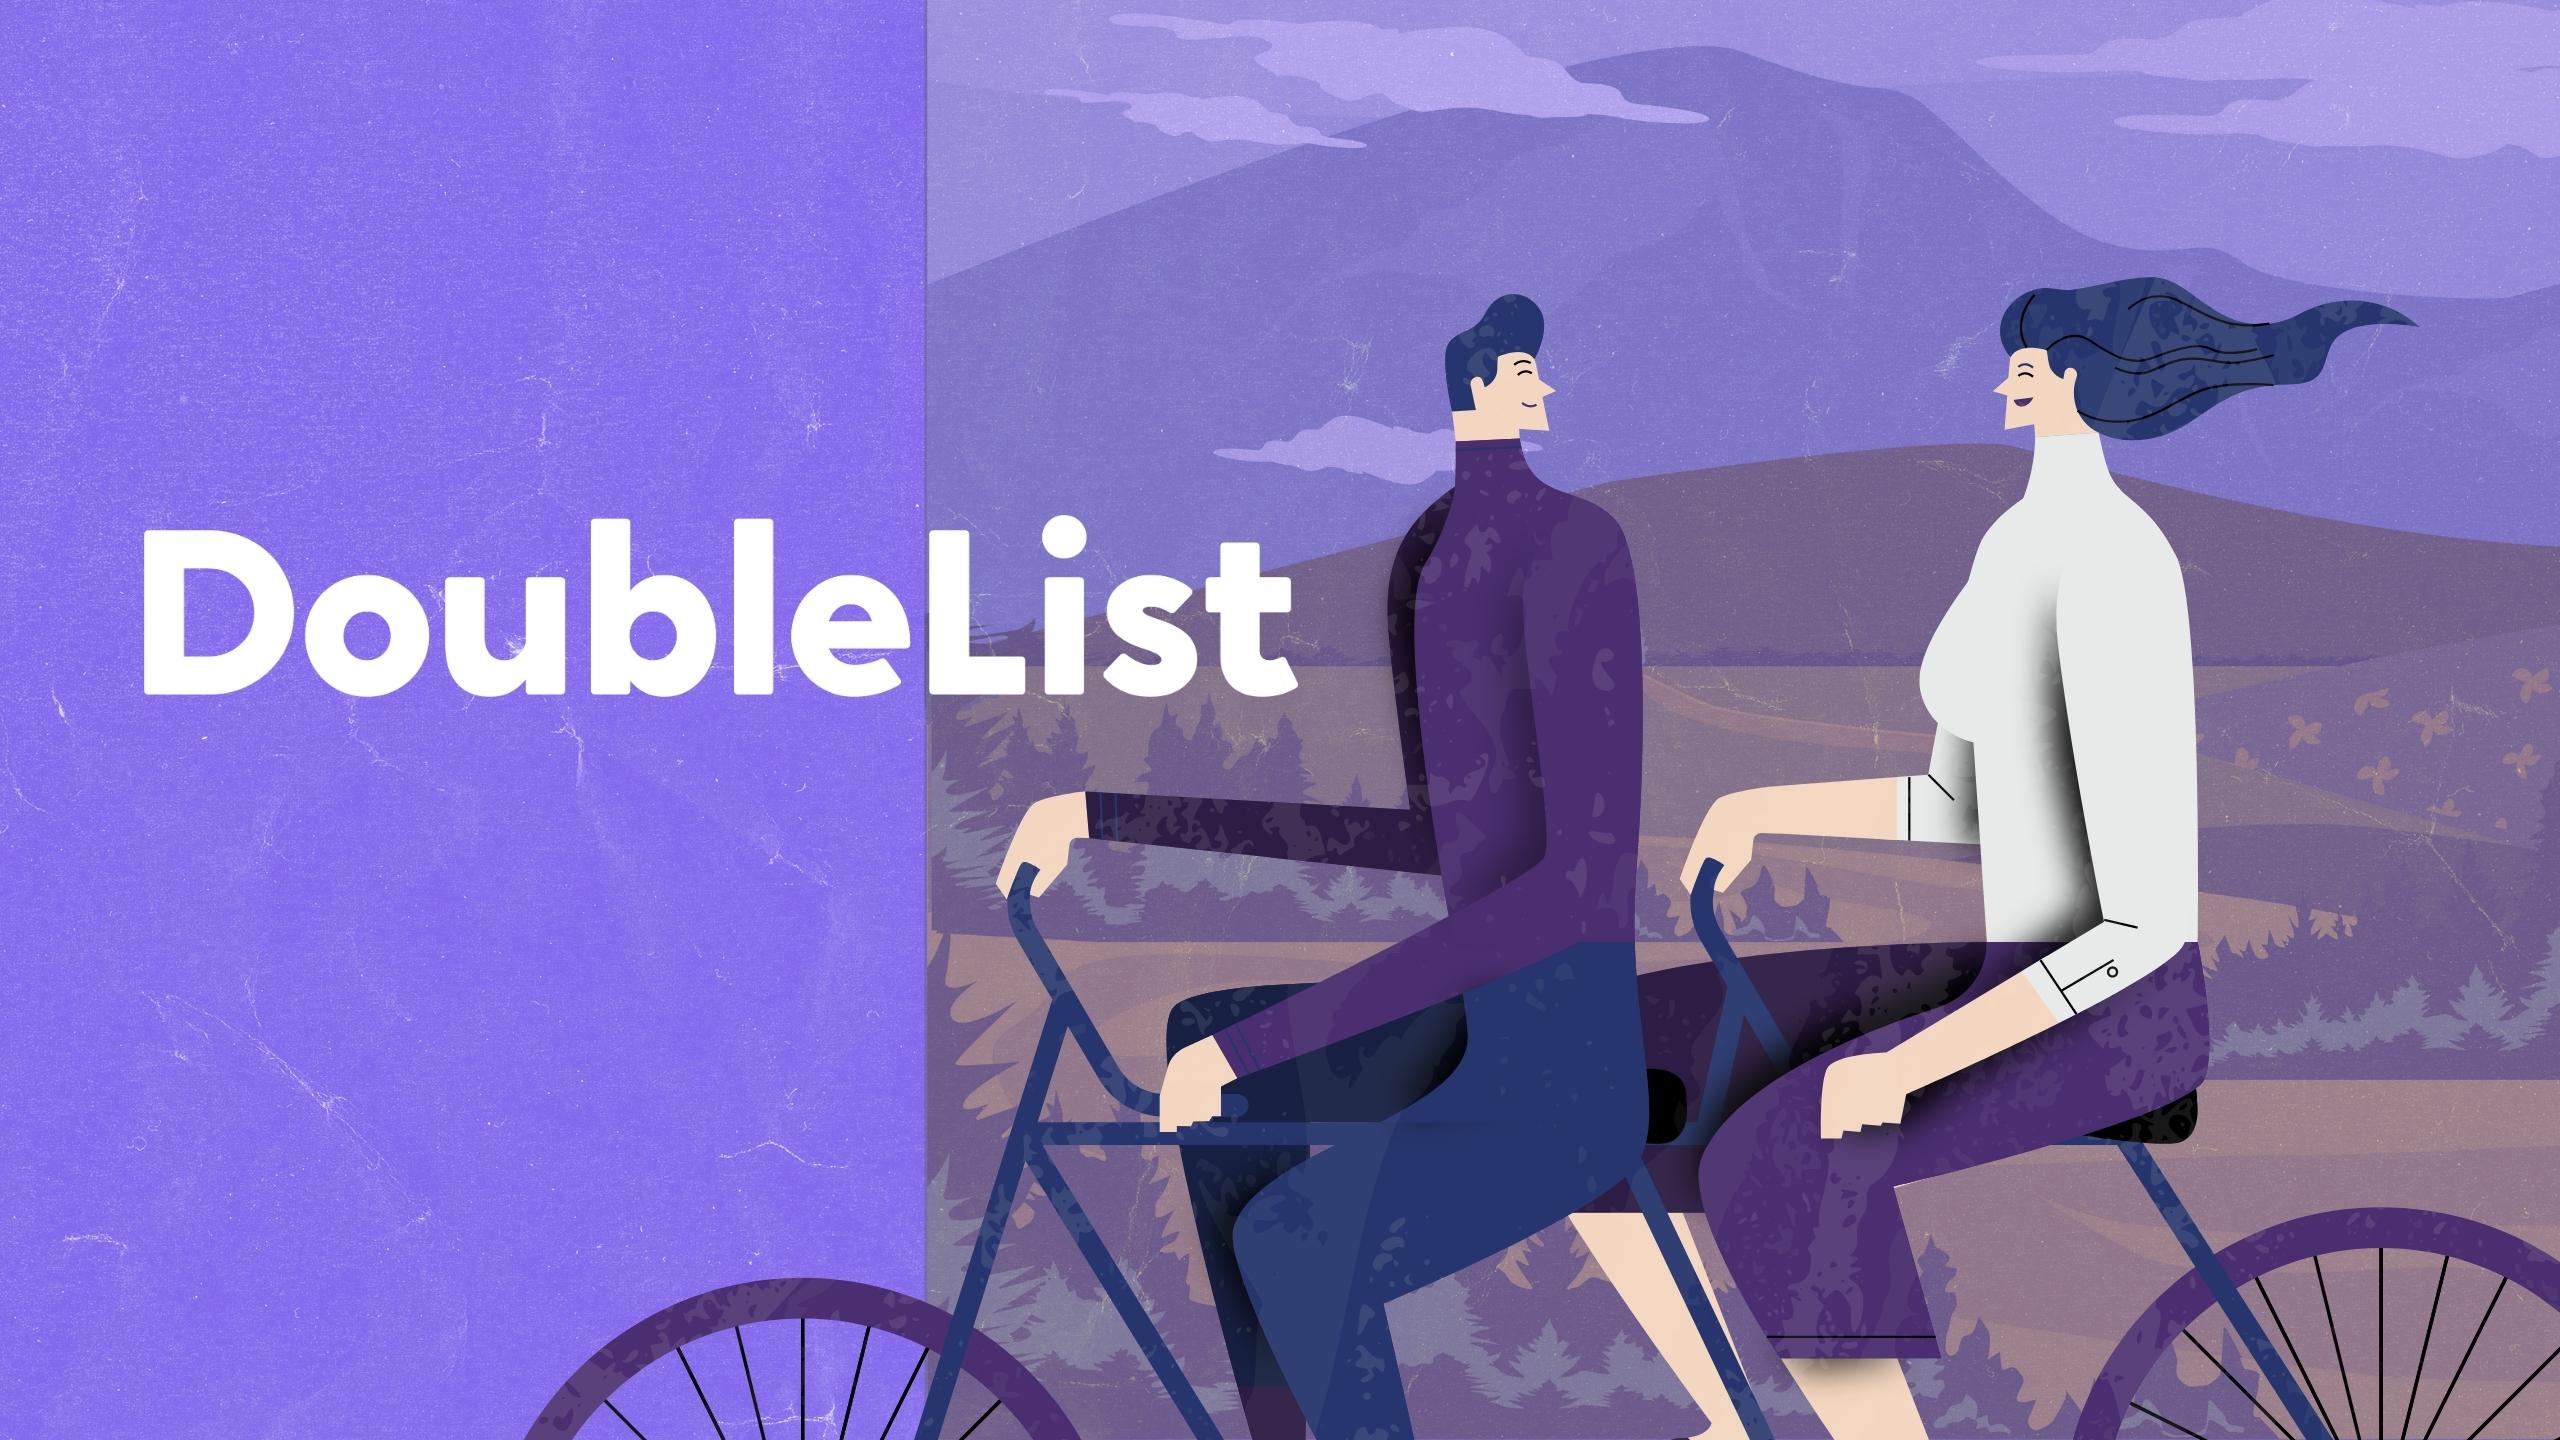 3. Doublelist - biking